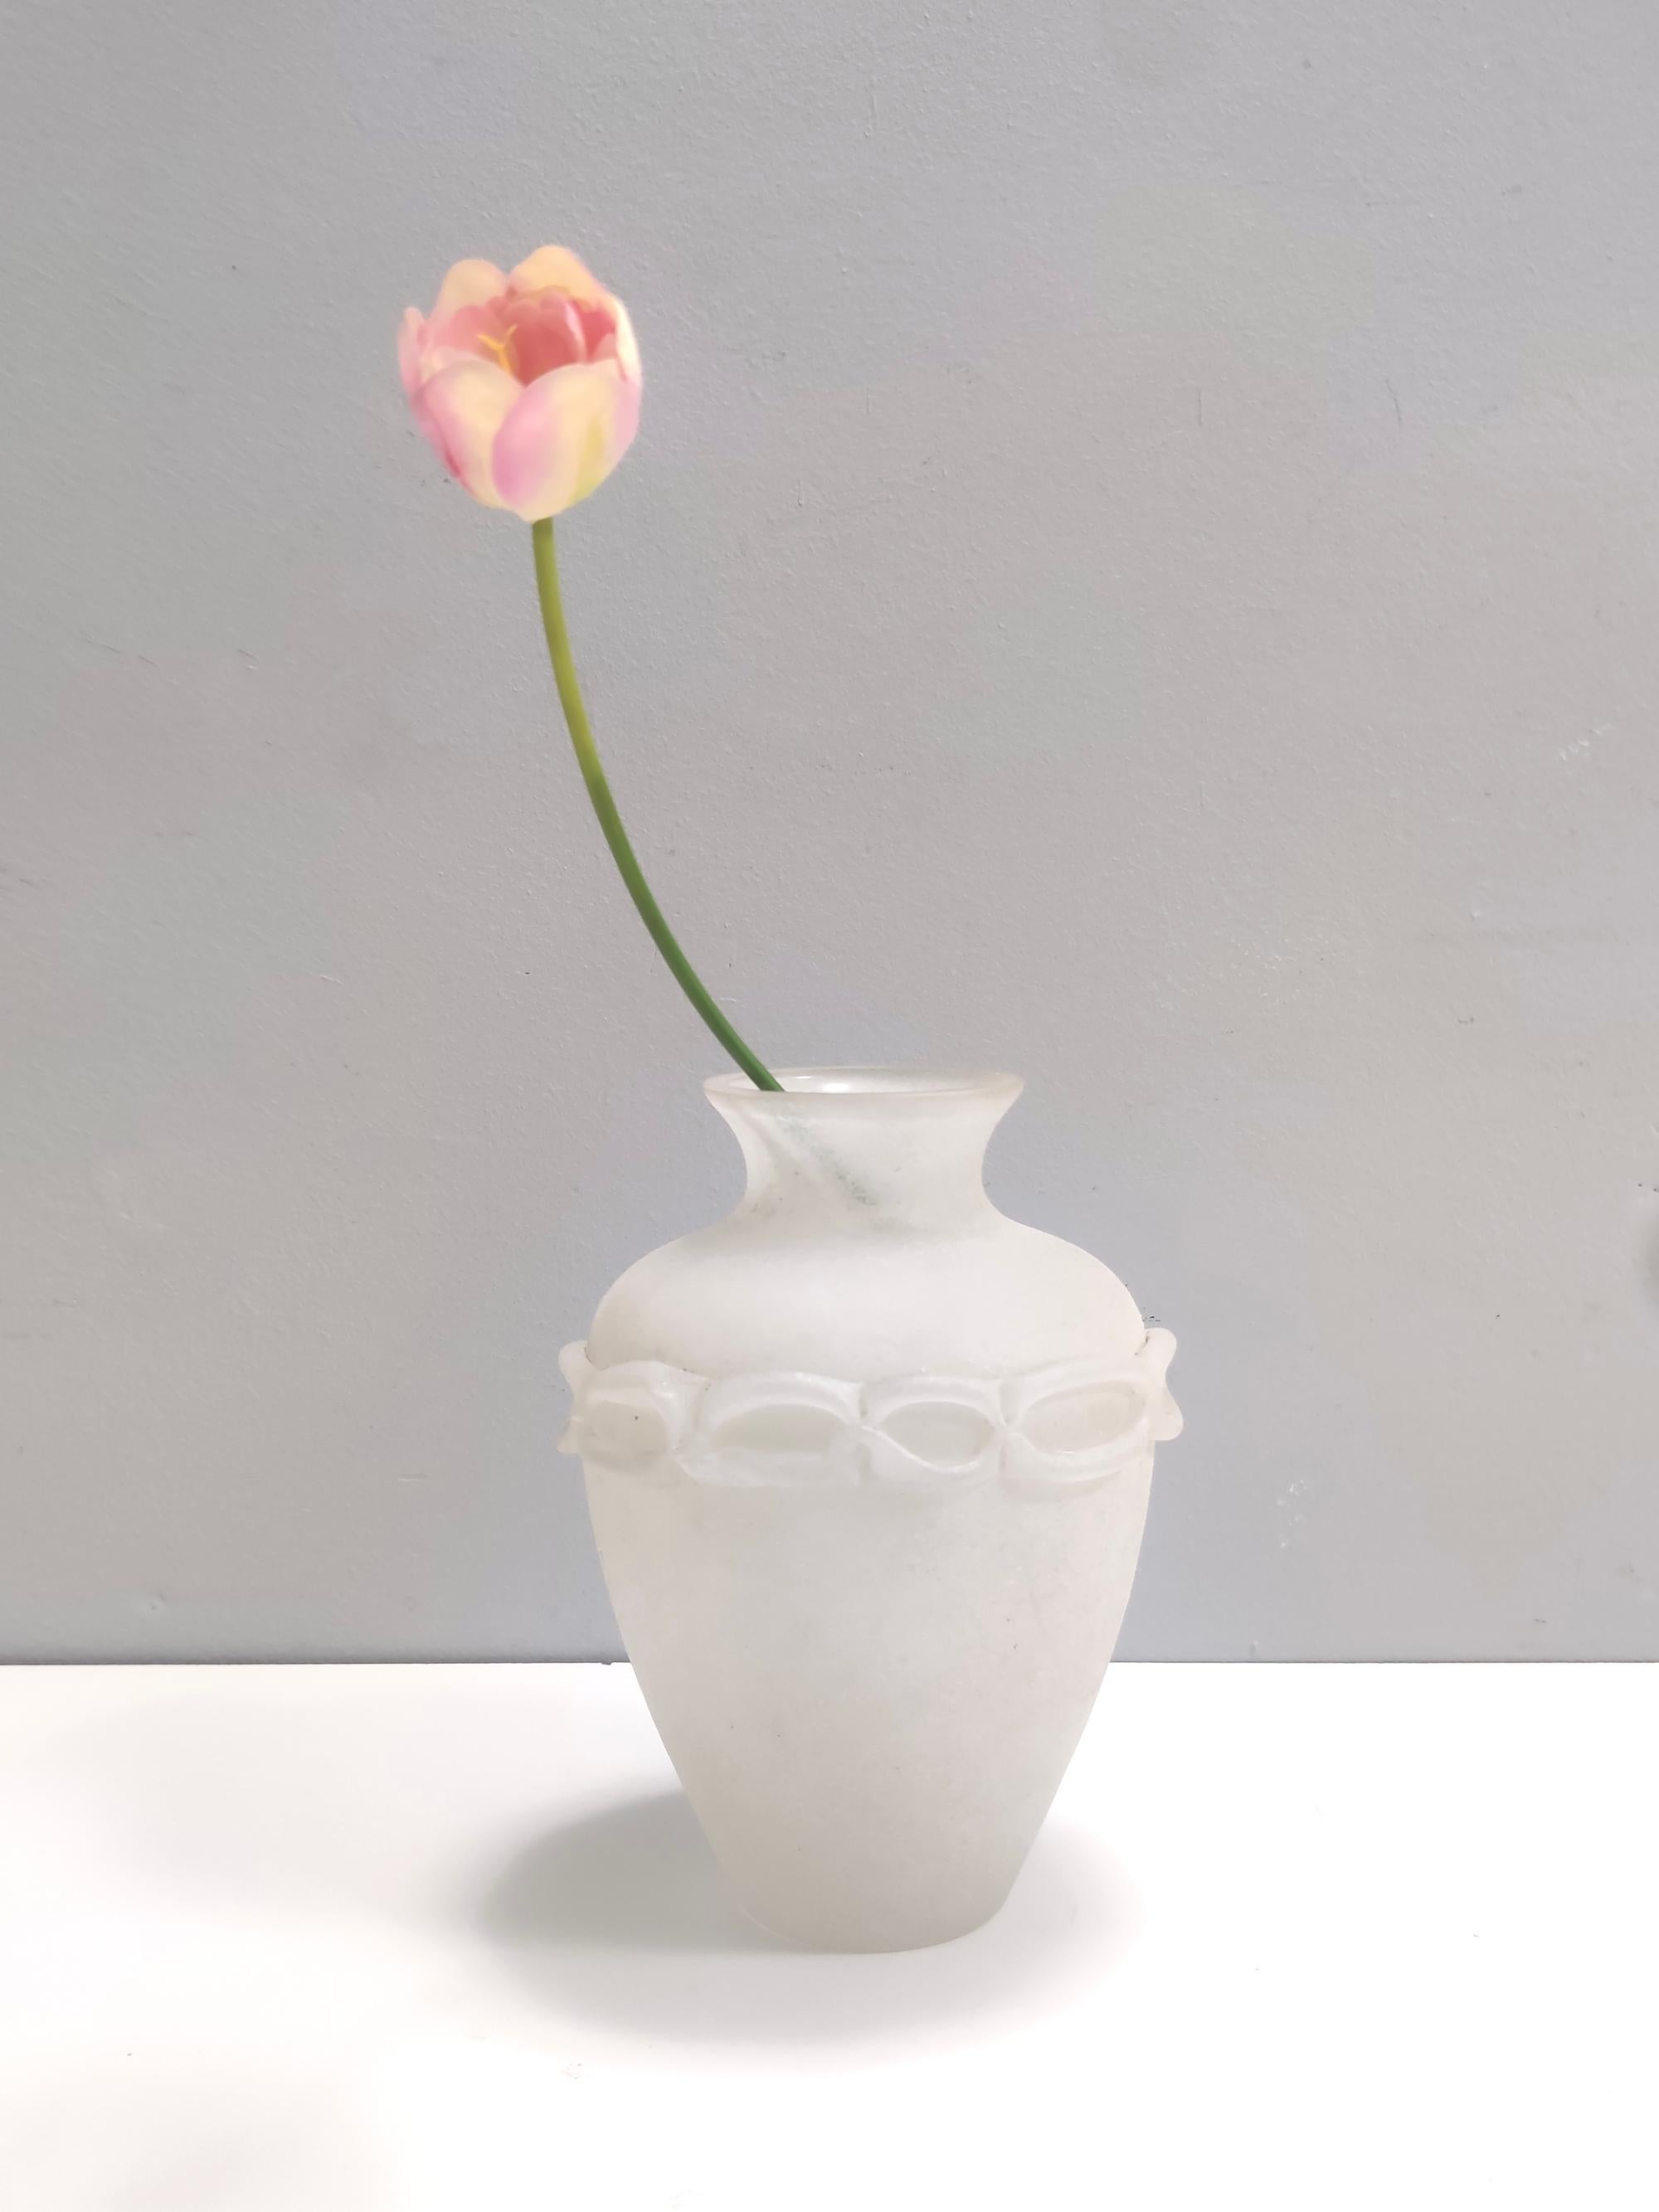 Hergestellt in Italien, 1970er Jahre. 
Diese Vase besteht aus weißem, mundgeblasenem Murano-Glas, das Seguso zugeschrieben wird.
Da es sich um ein Vintage-Stück handelt, kann es leichte Gebrauchsspuren aufweisen, aber es ist in perfektem